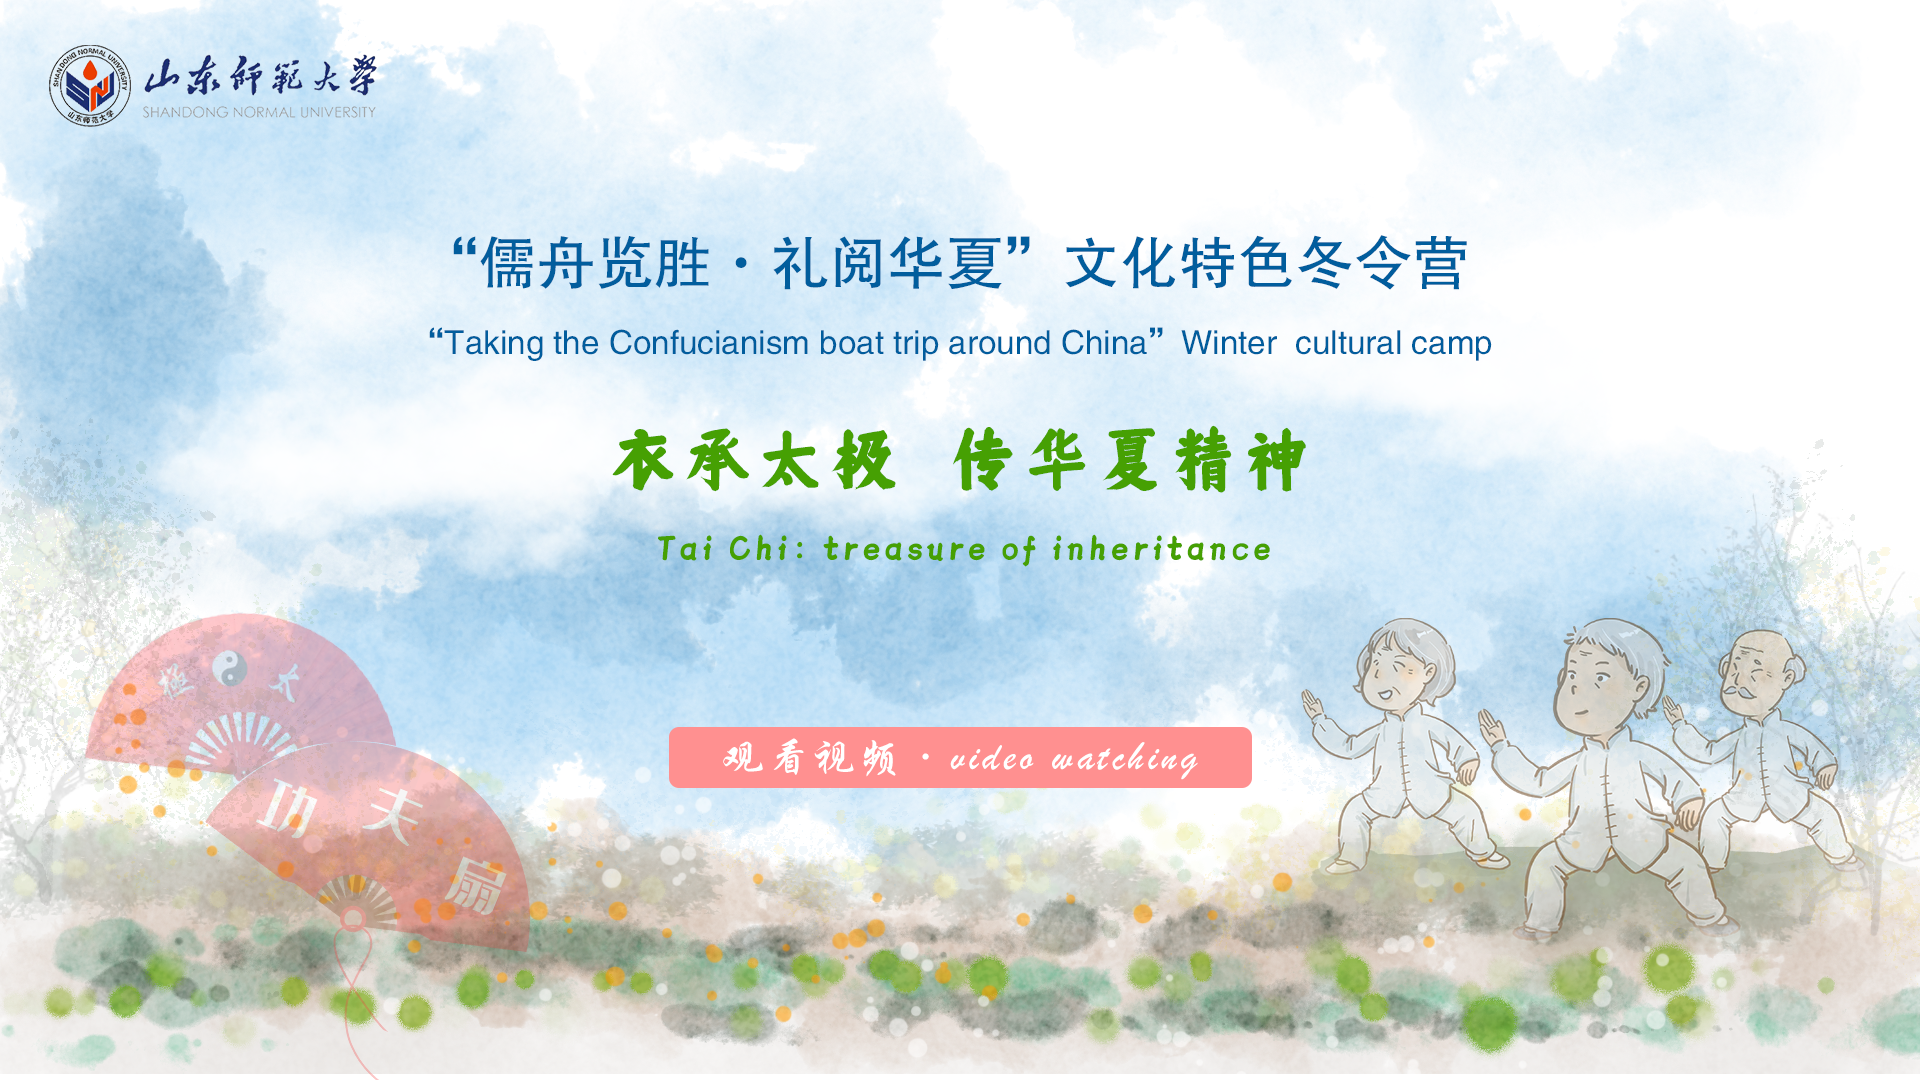 Tai Chi: treasure of inheritance